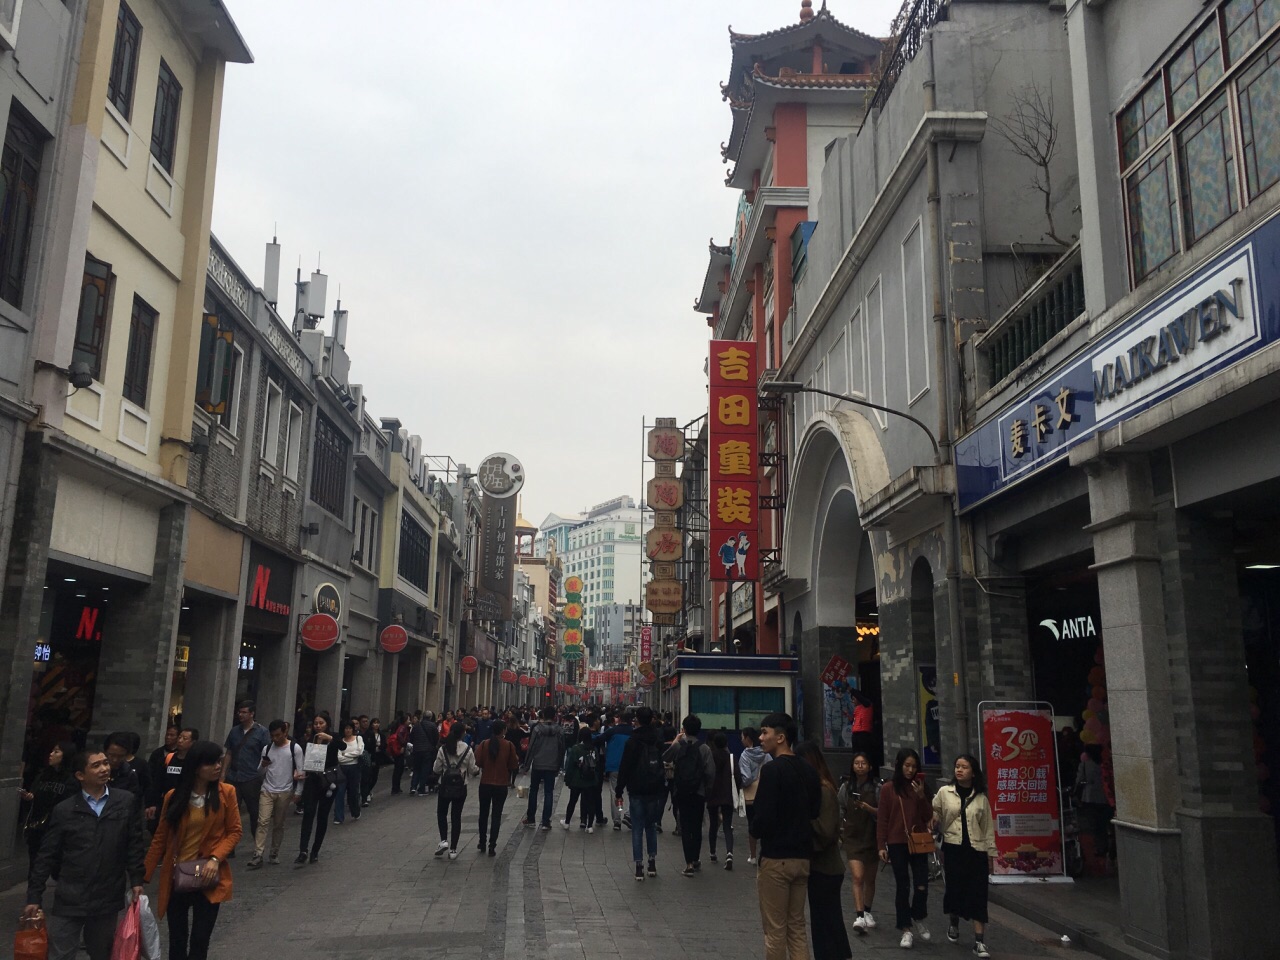 【携程攻略】广州上下九步行街景点,广州的老牌商业街了,分为三段